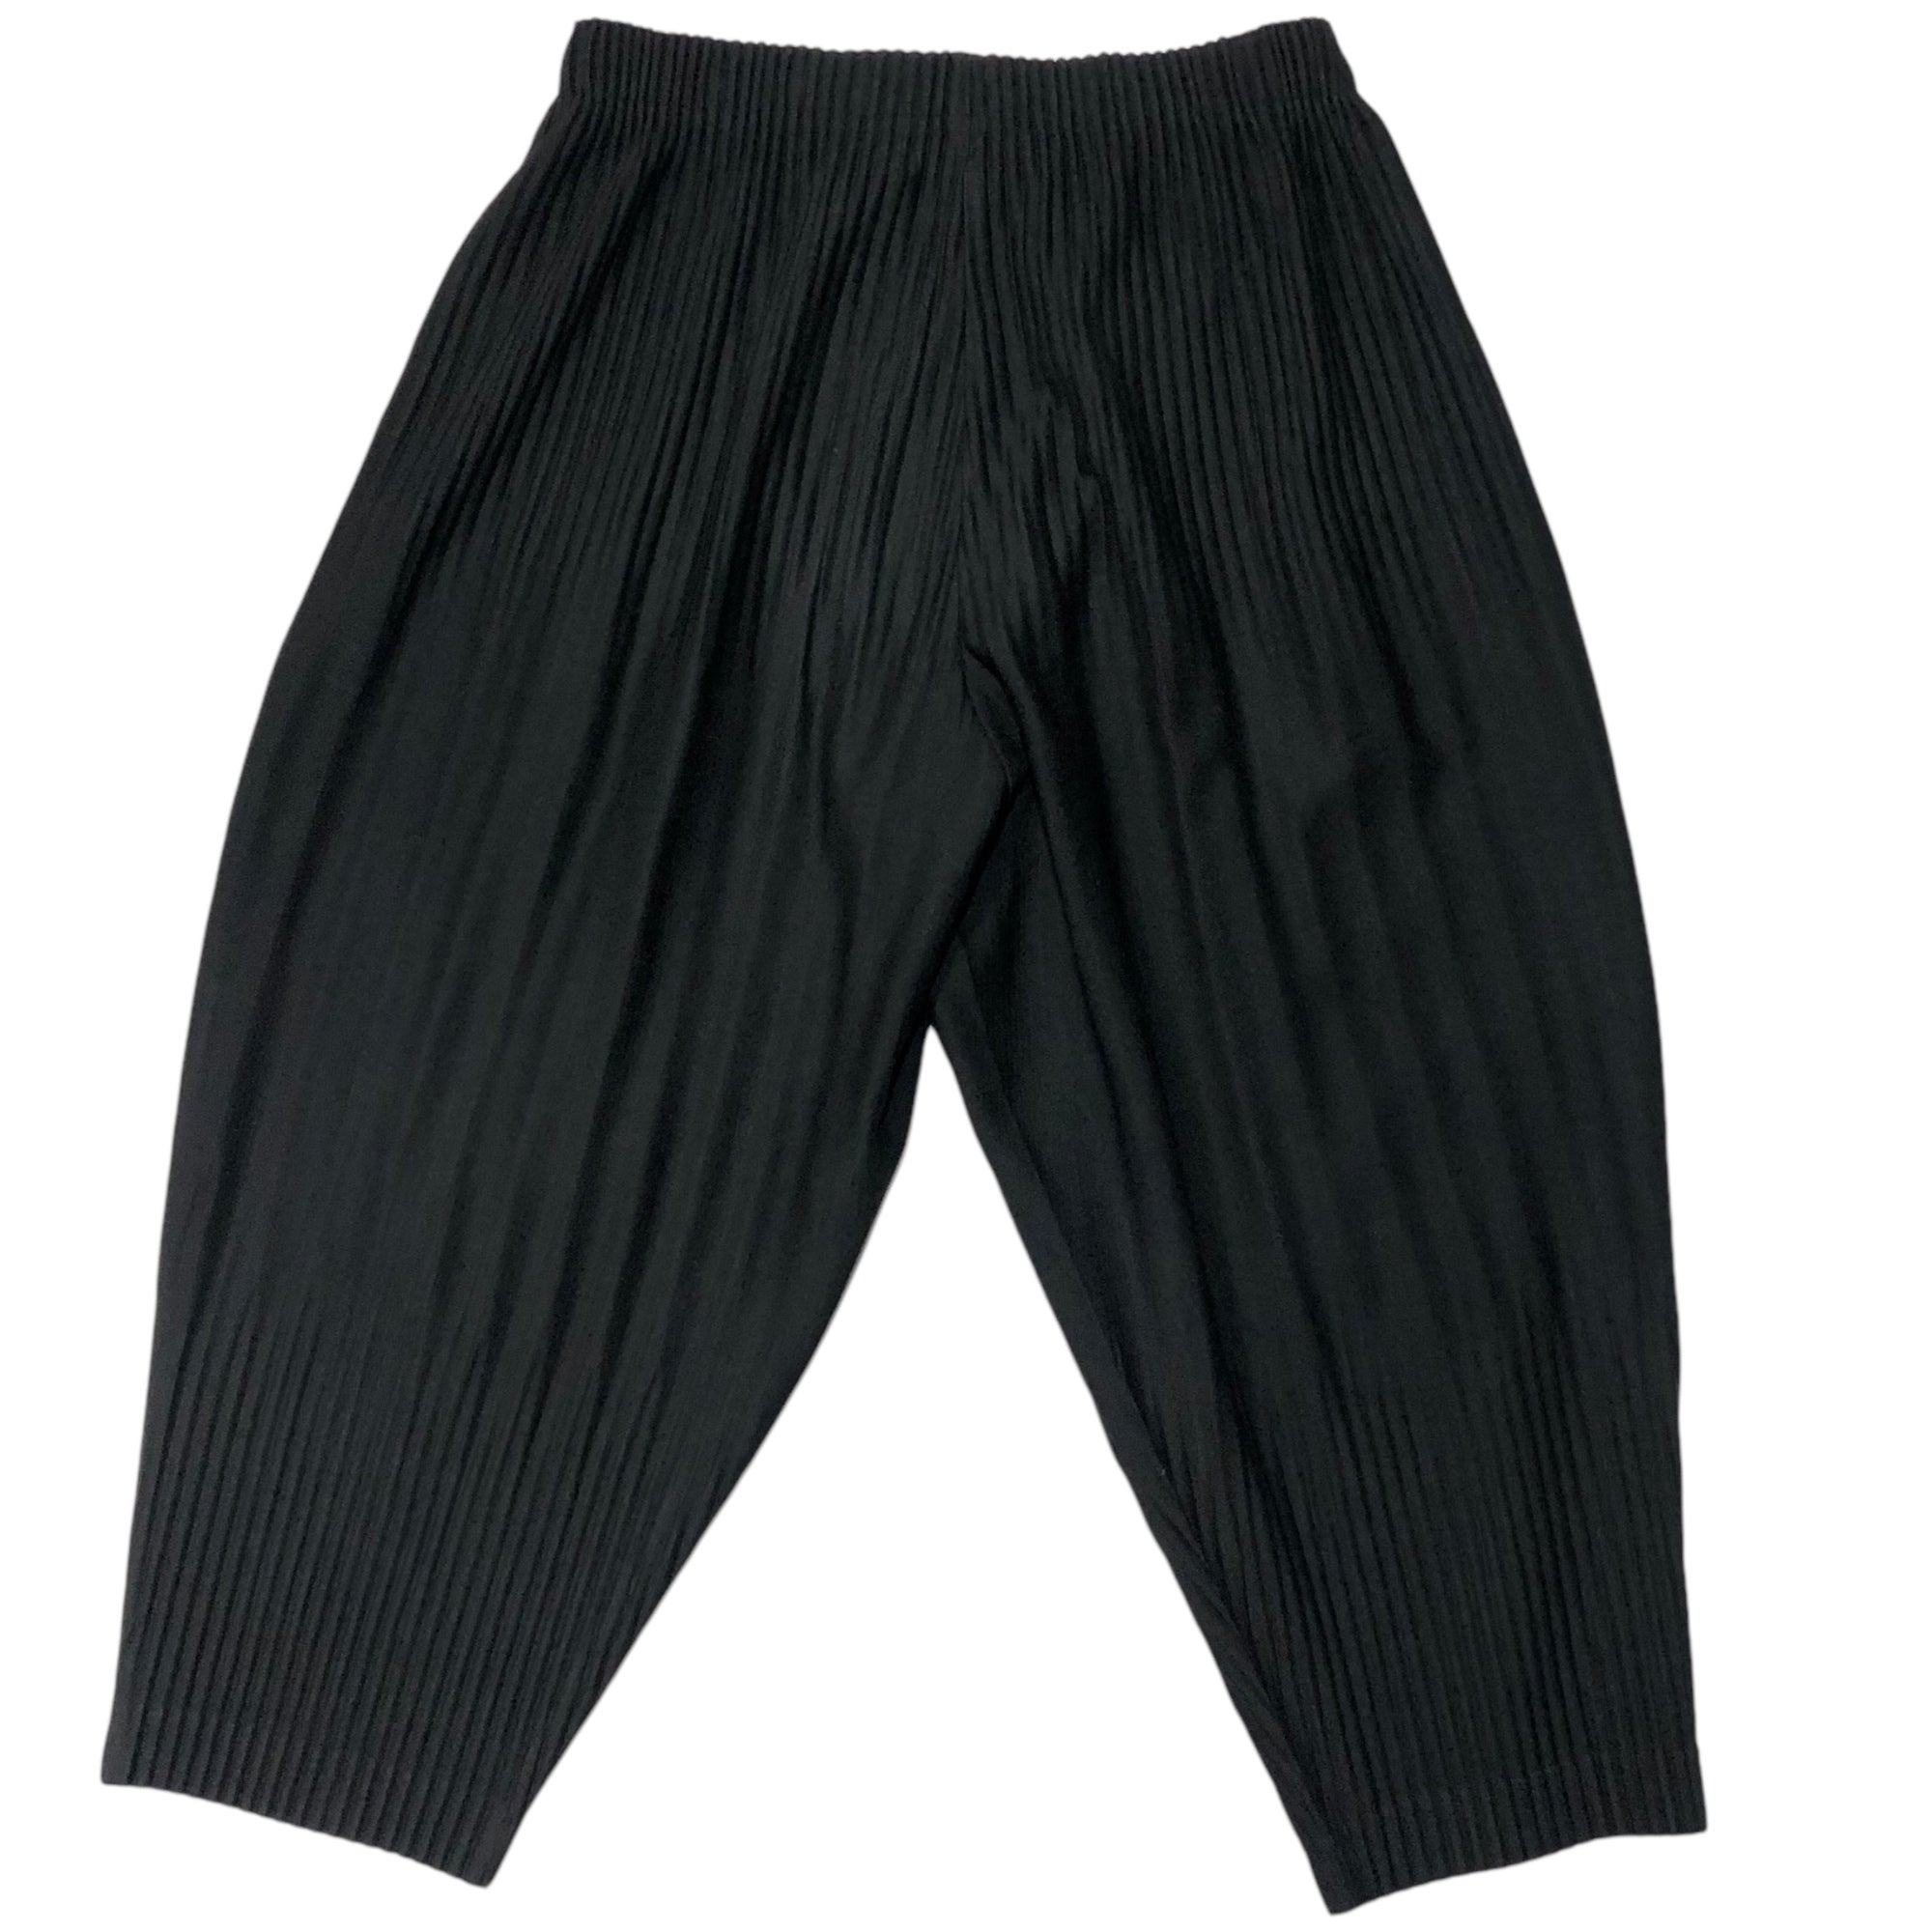 HOMME PLISSE ISSEY MIYAKE(オムプリッセイッセイミヤケ) BASIC pleated tapered pants ベーシック プリーツ テーパード パンツ HP55JF153 2(M) ブラック